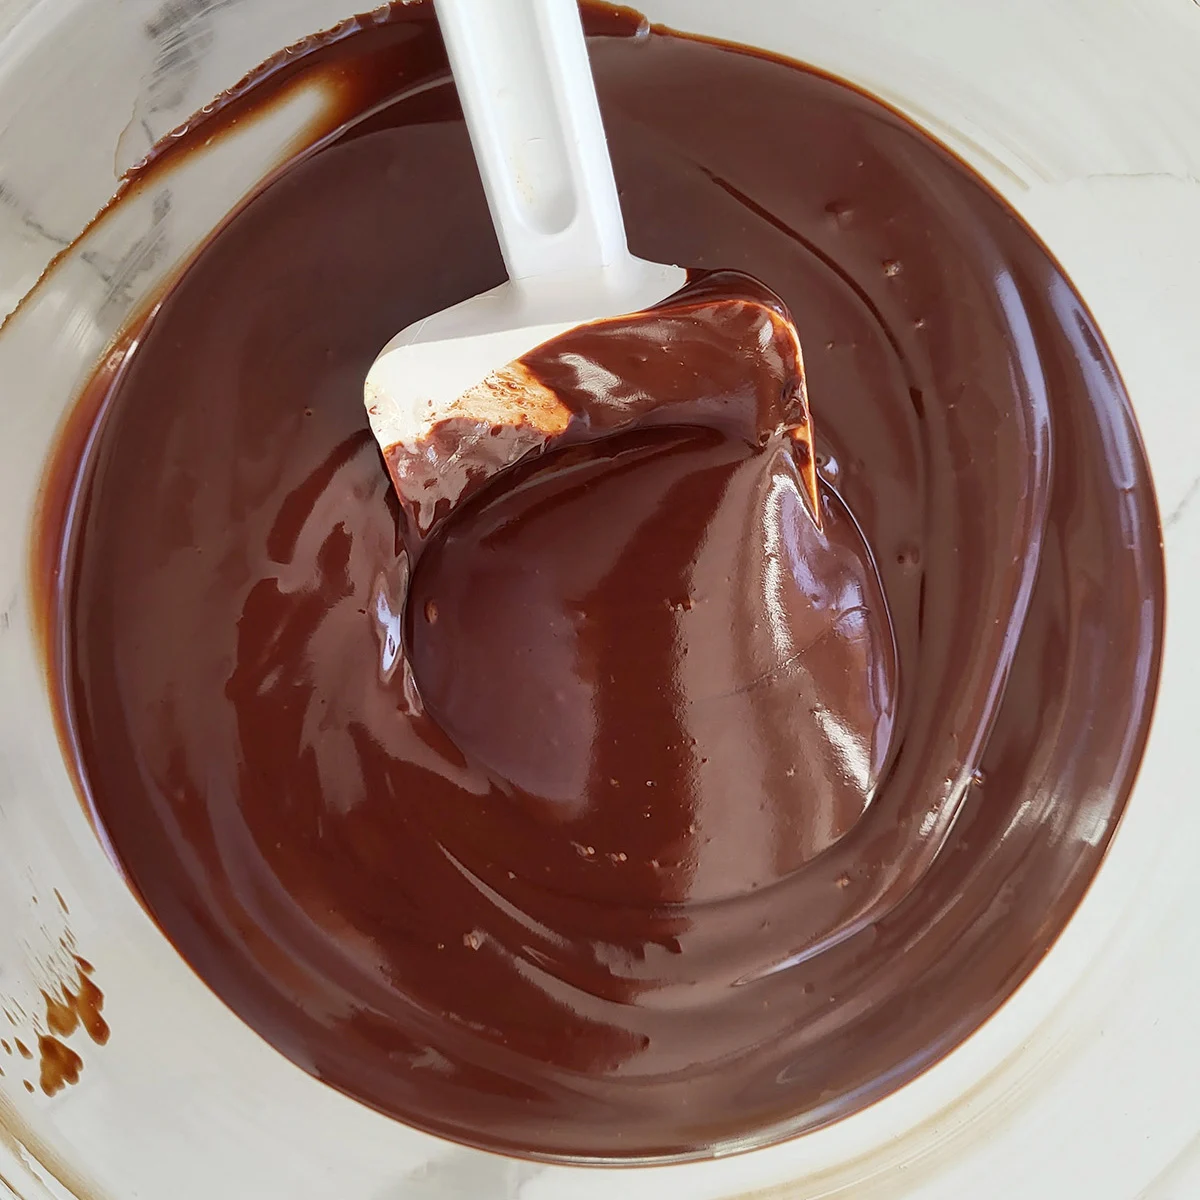 How to make Chocolate Ganache